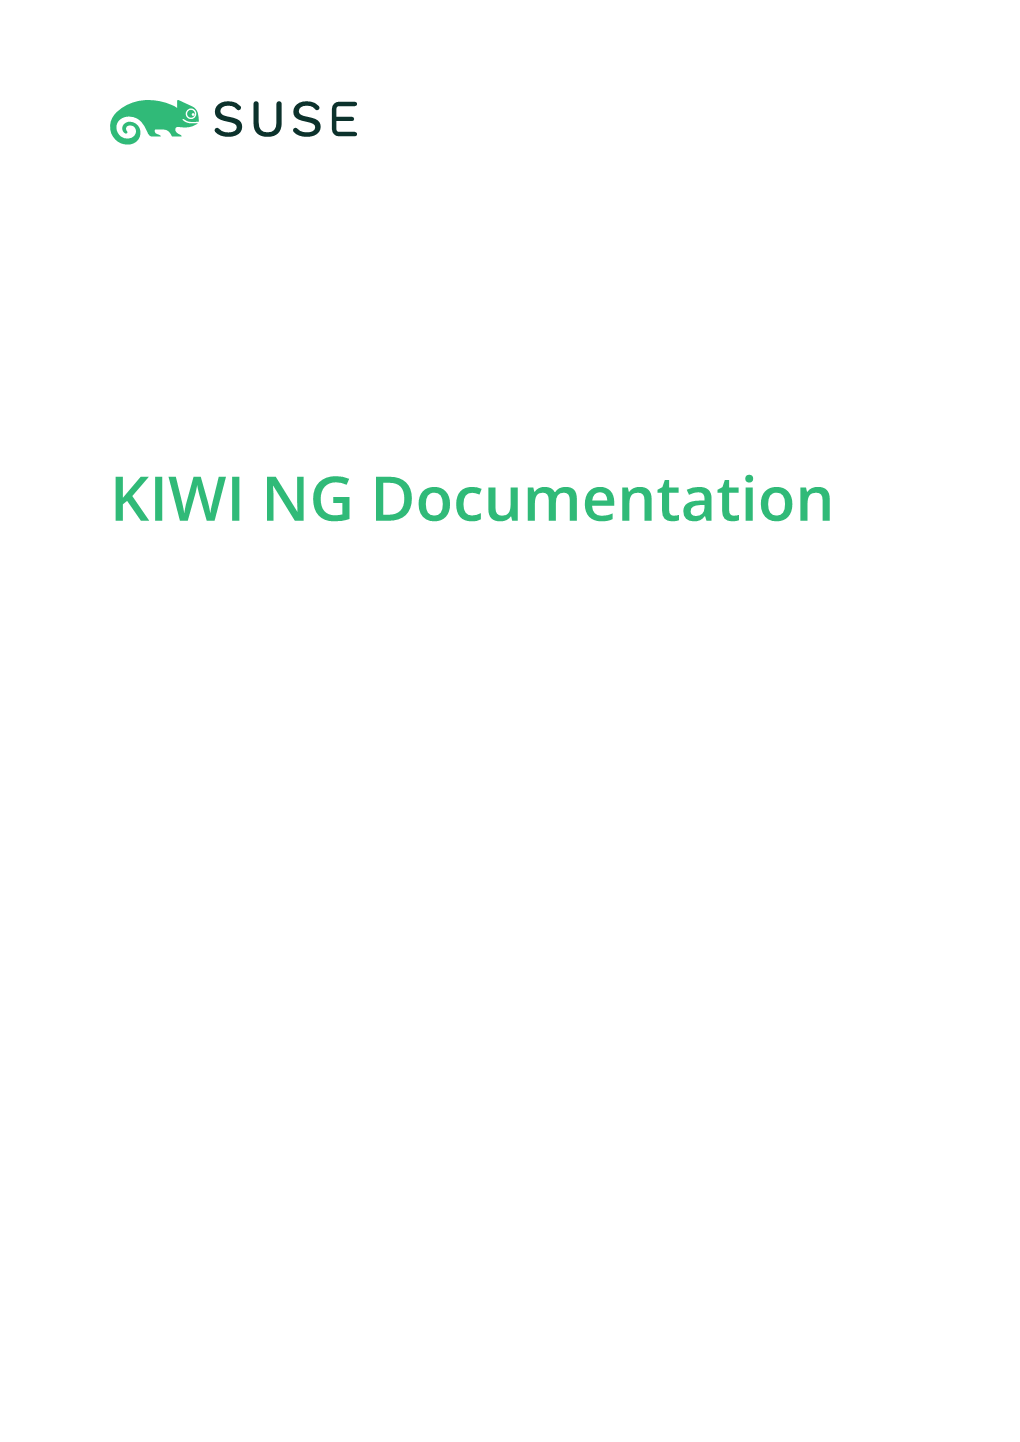 KIWI NG Documentation KIWI NG Documentation